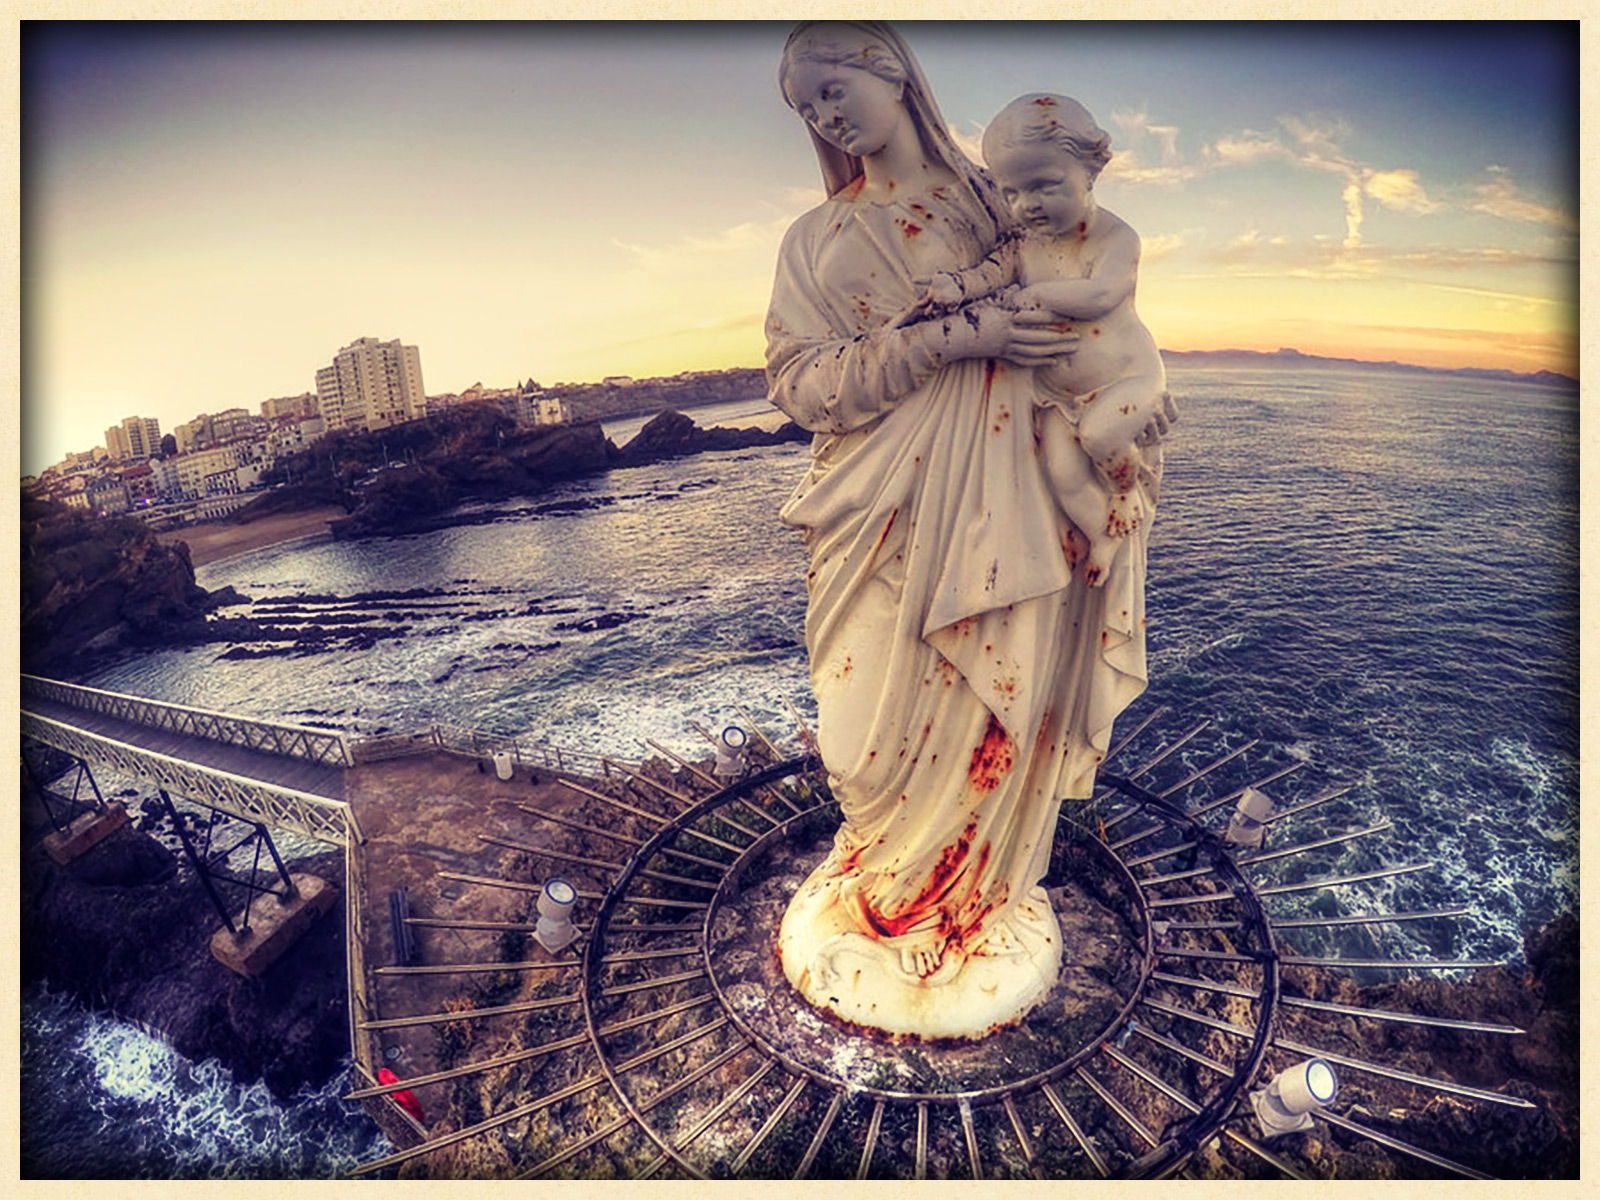 Rocher de la Vierge - Biarritz